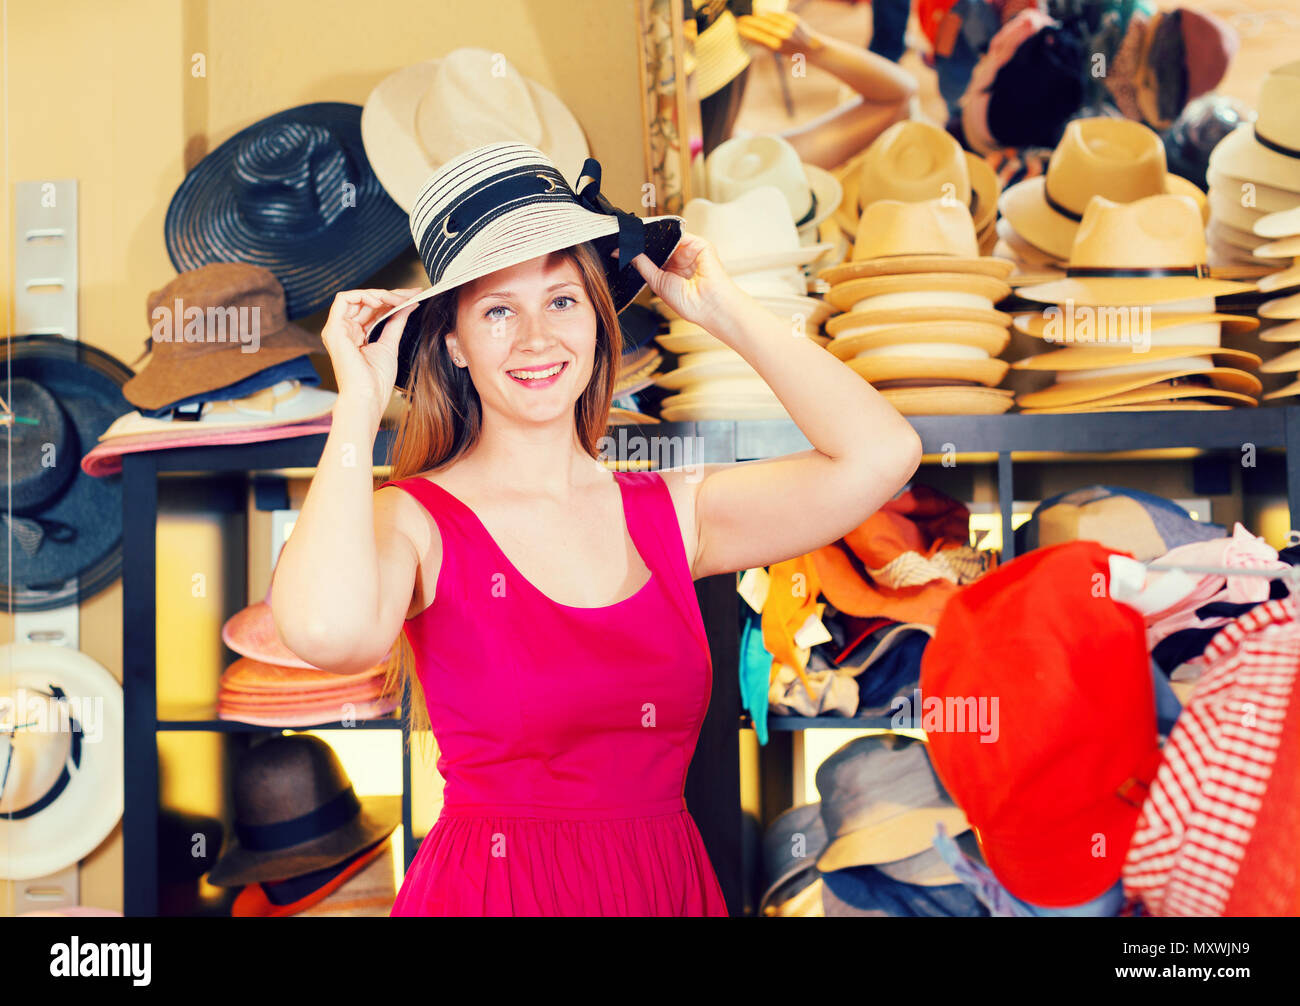 Примерять шляпу. Женщина примеряет шляпу. Примерка шляпки. Девушка примеряет шляпку. Примерка головных уборов в торговом центре.